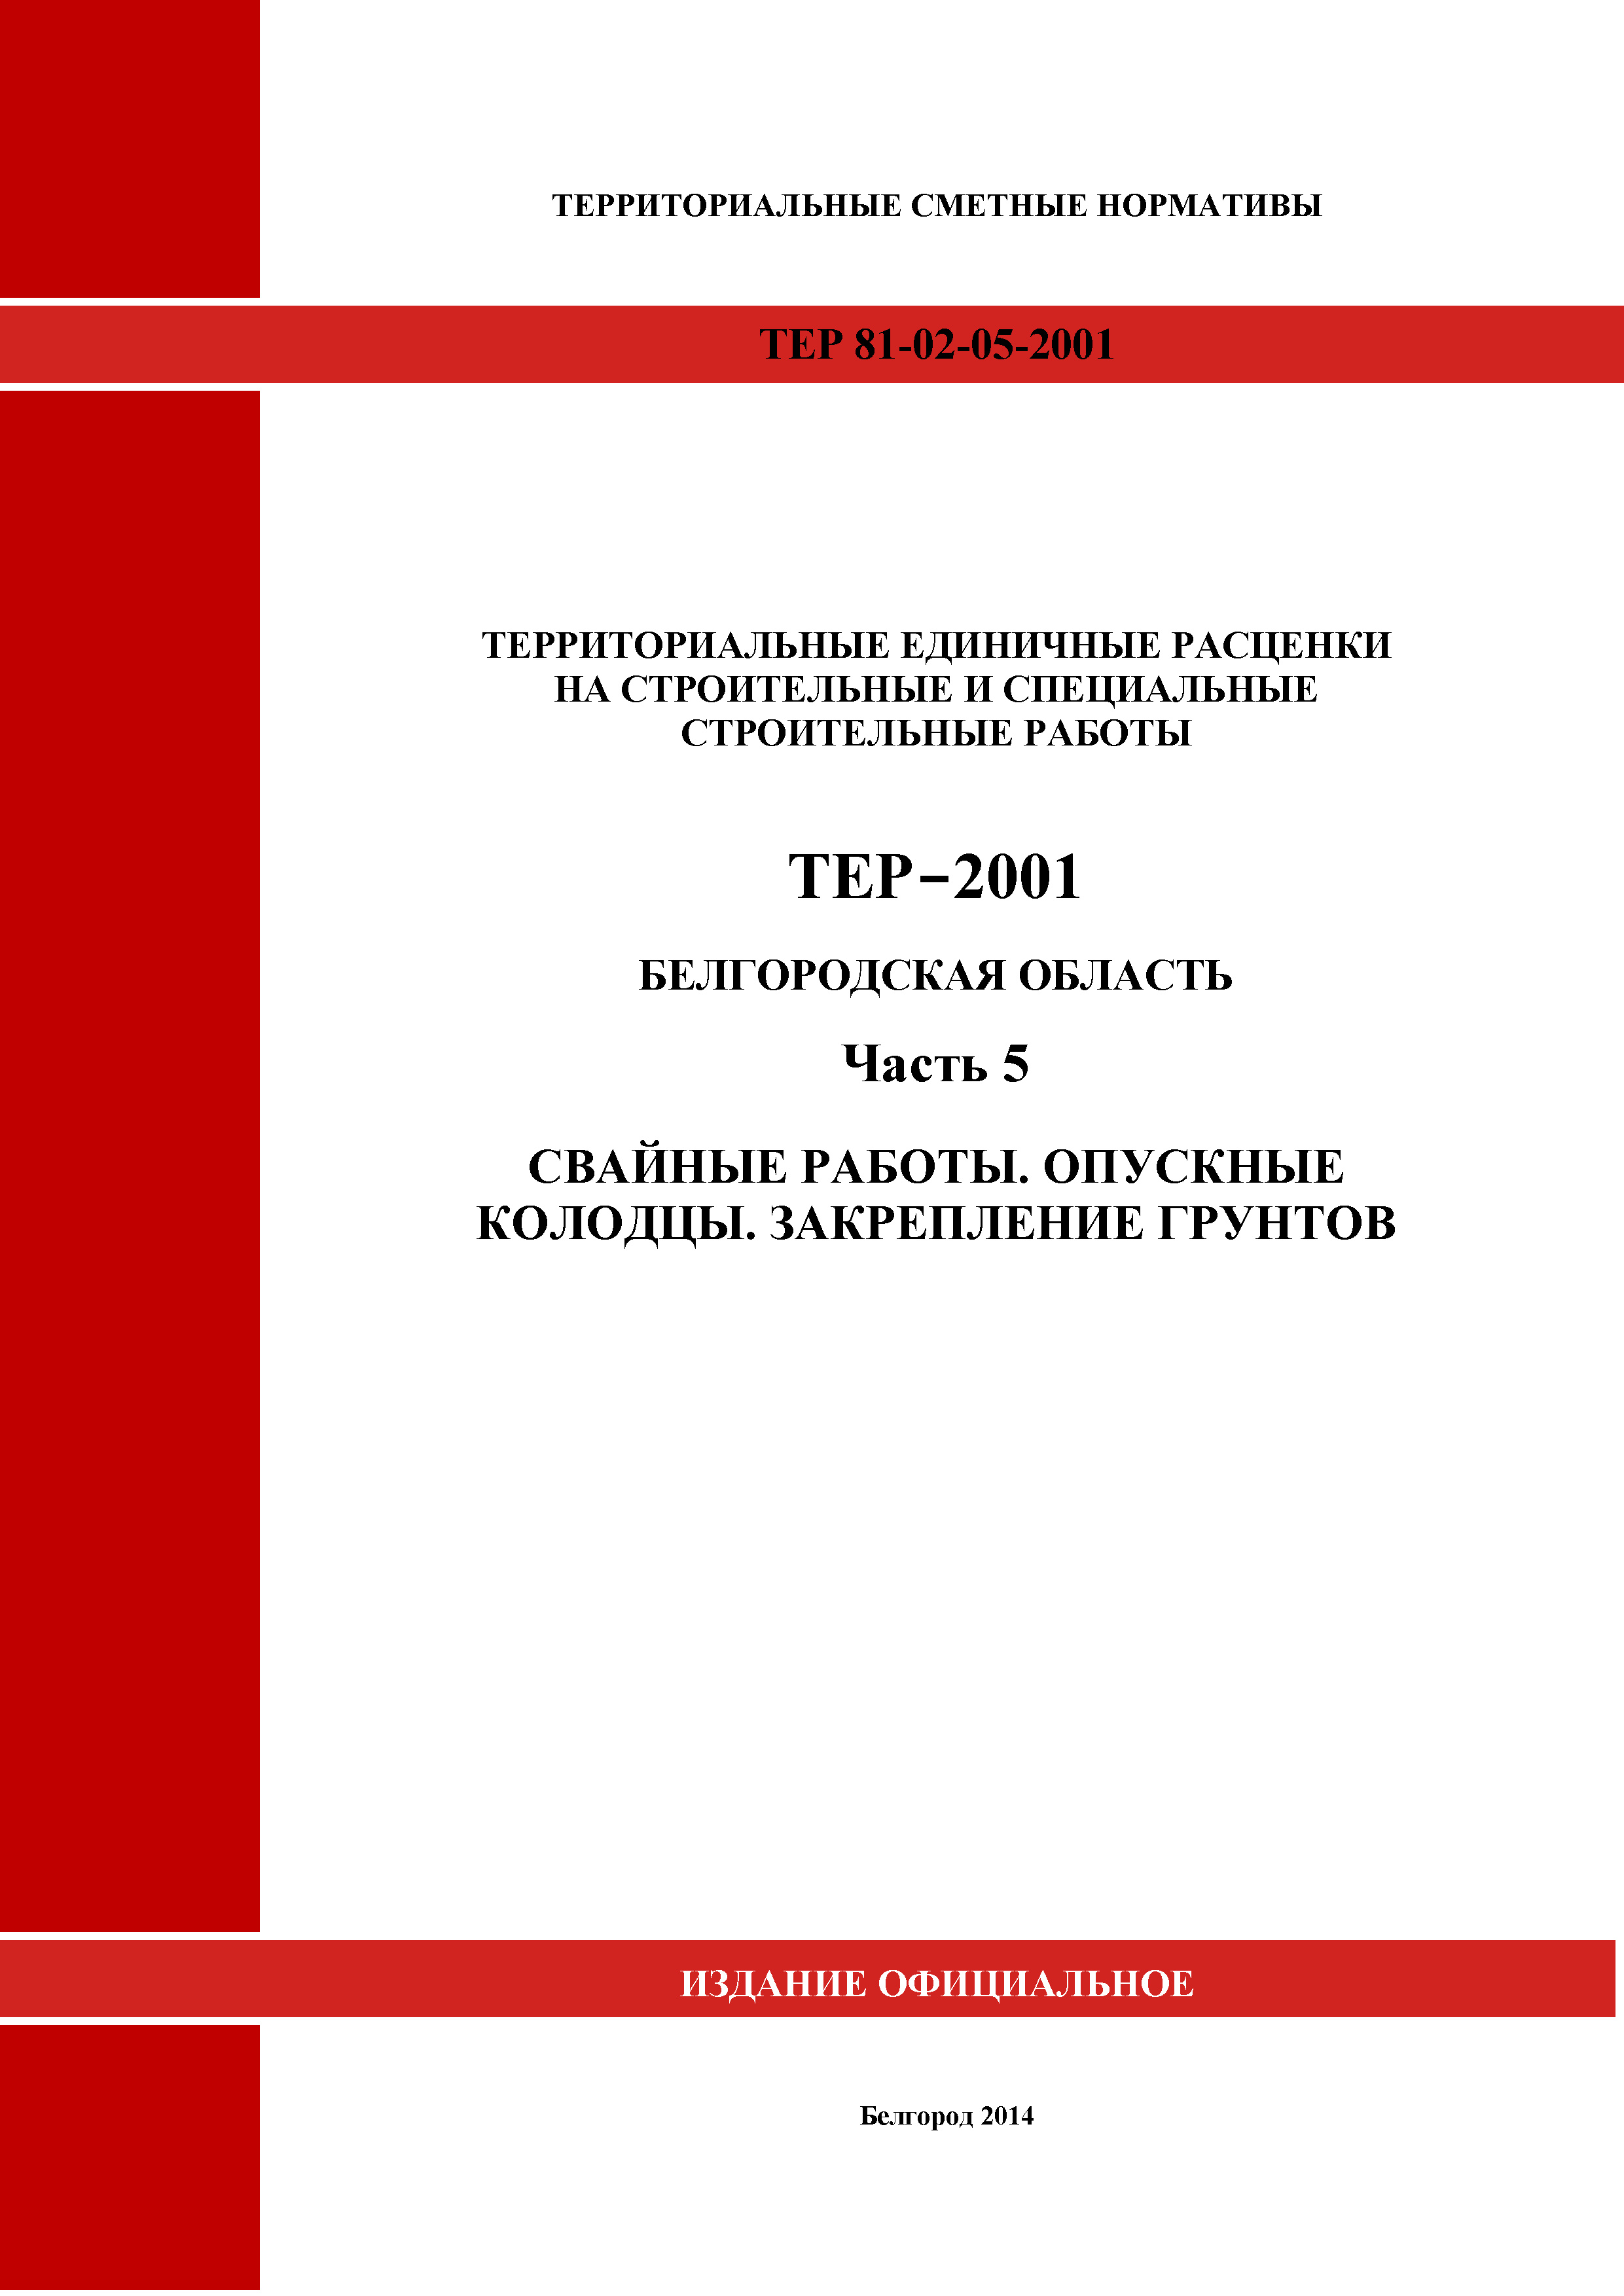 ТЕР Белгородская область 81-02-05-2001